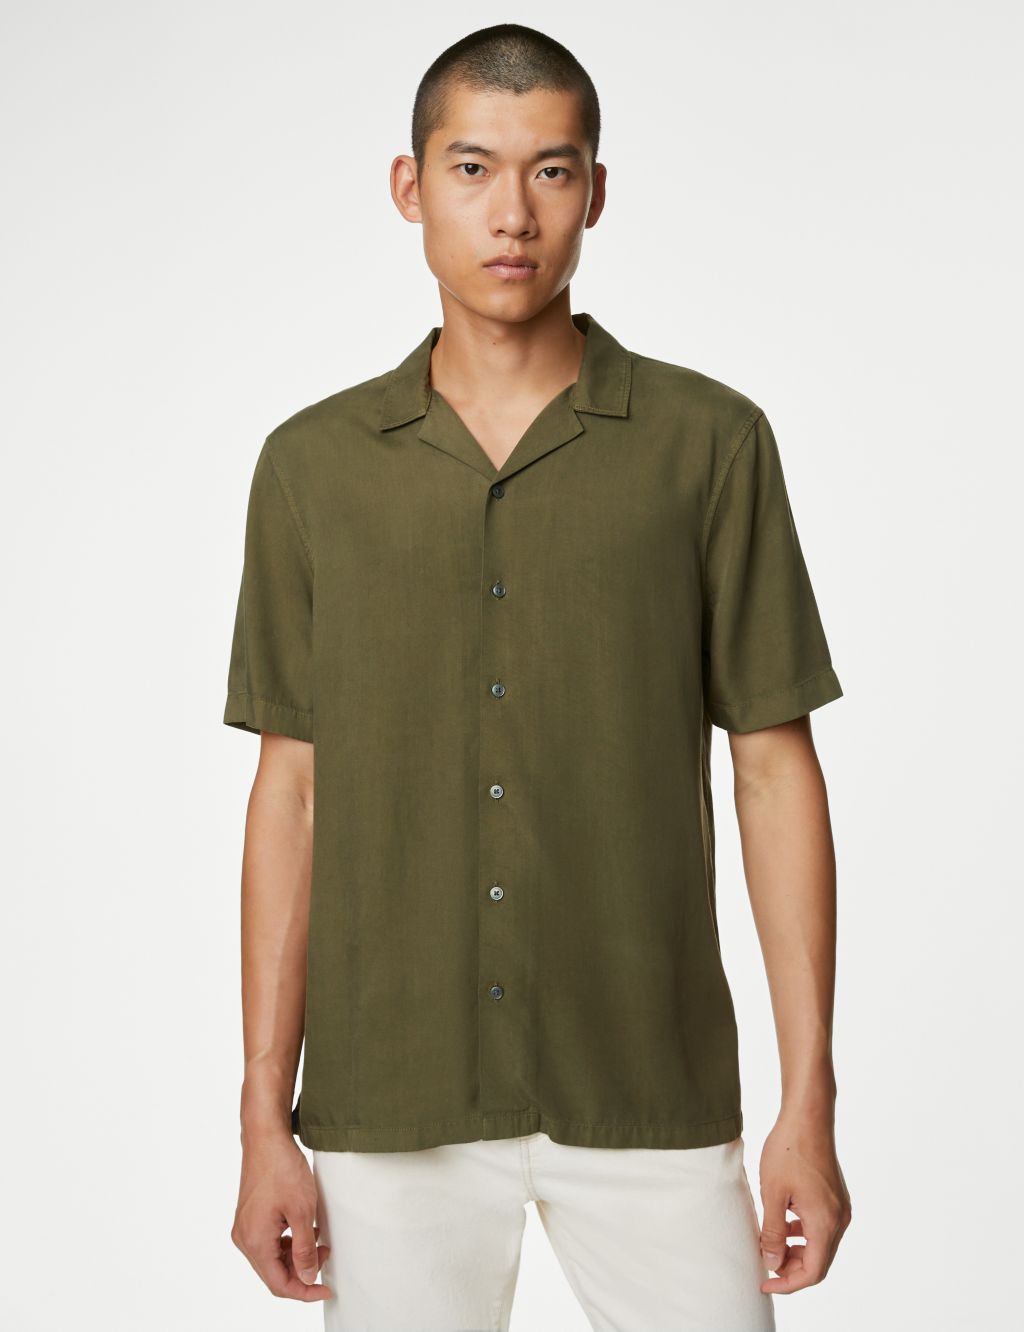 Men’s Cuban Collar Shirts | M&S